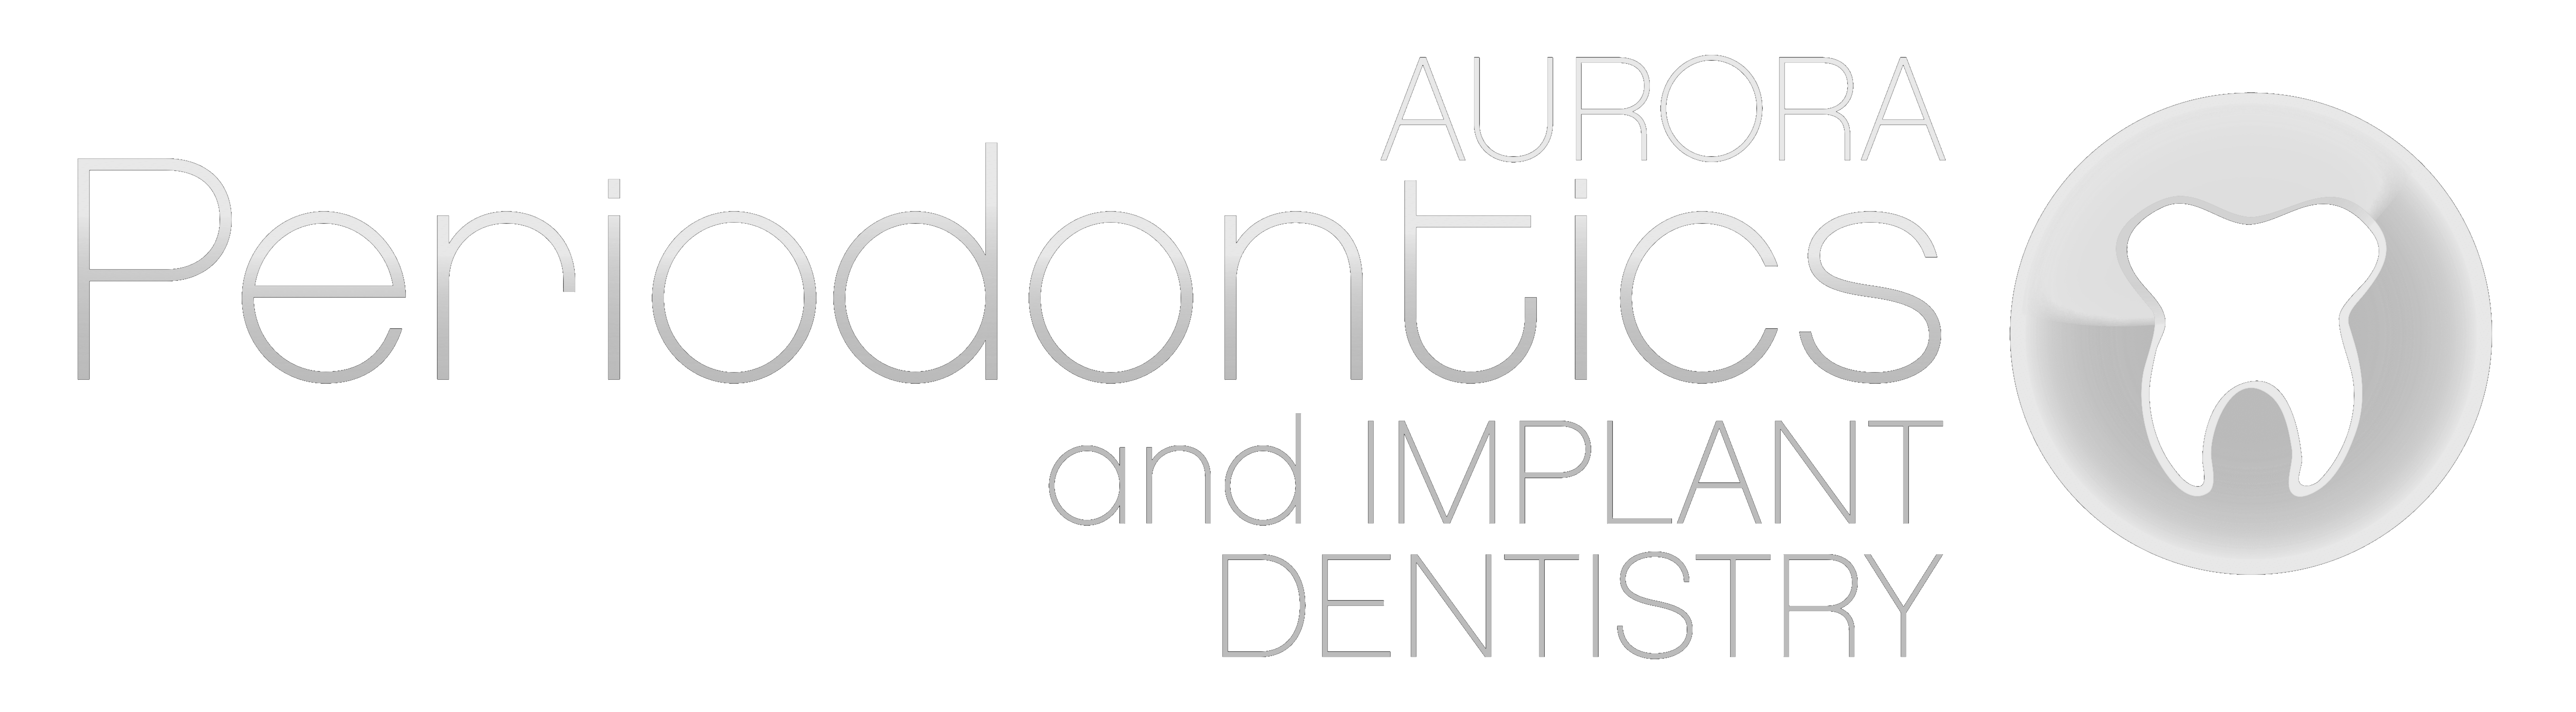 Aurora Periodontics & Implant Dentistry